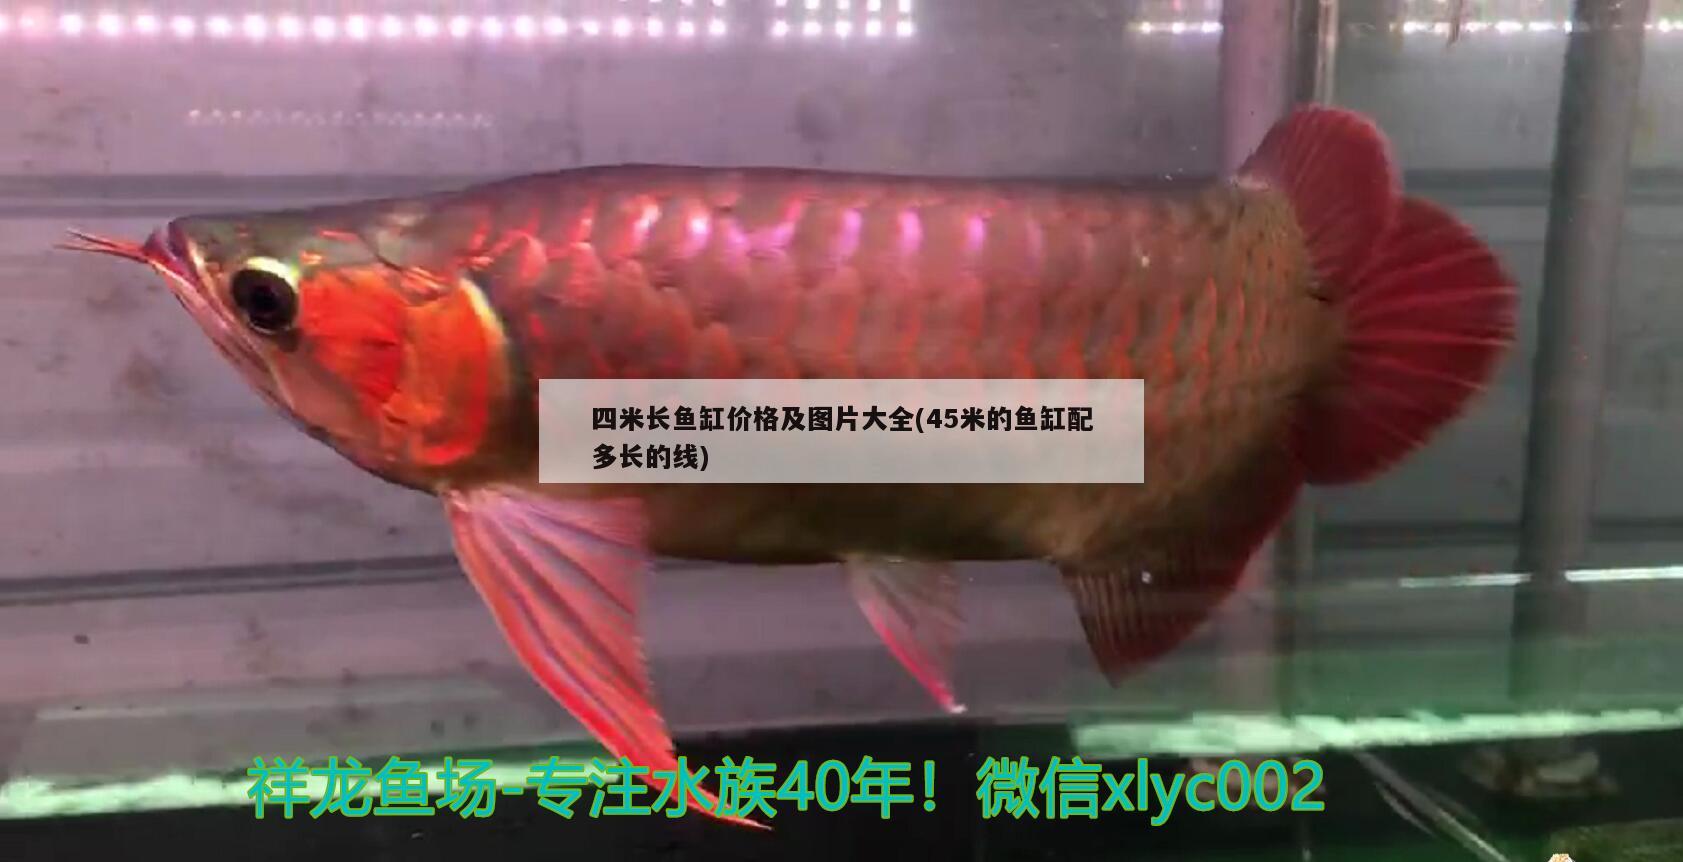 四米长鱼缸价格及图片大全(45米的鱼缸配多长的线) 斑马鸭嘴鱼苗